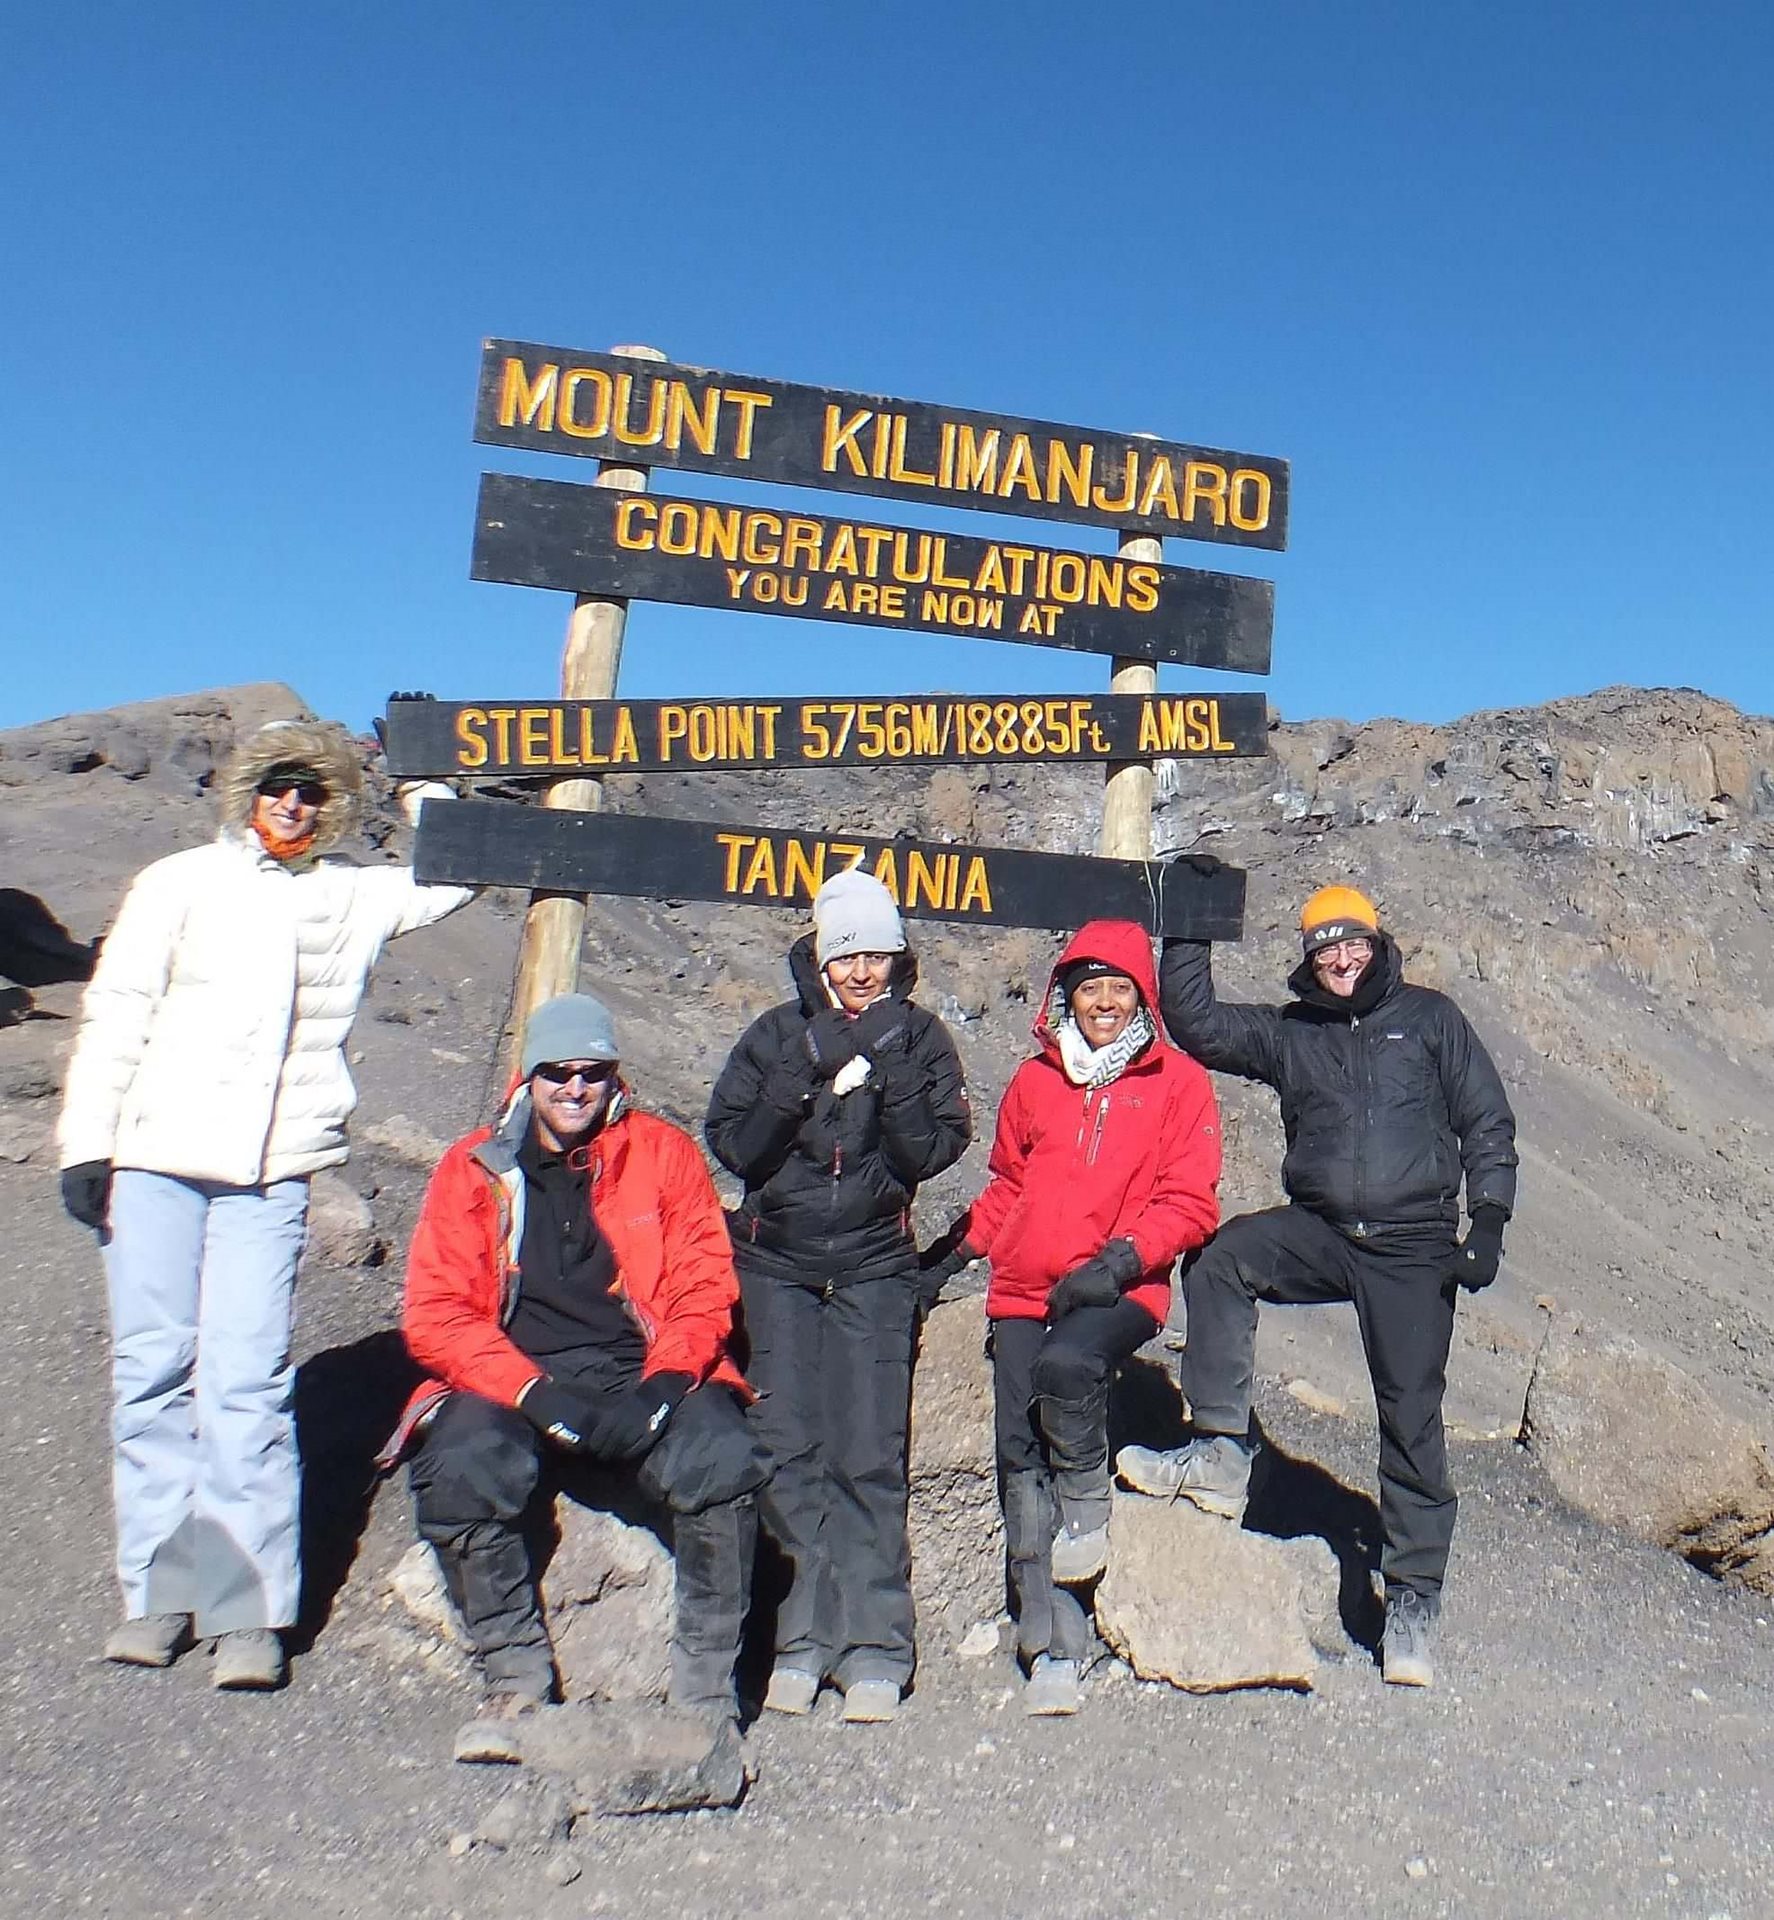 Rajani Bhakta summits Mount Kilimanjaro